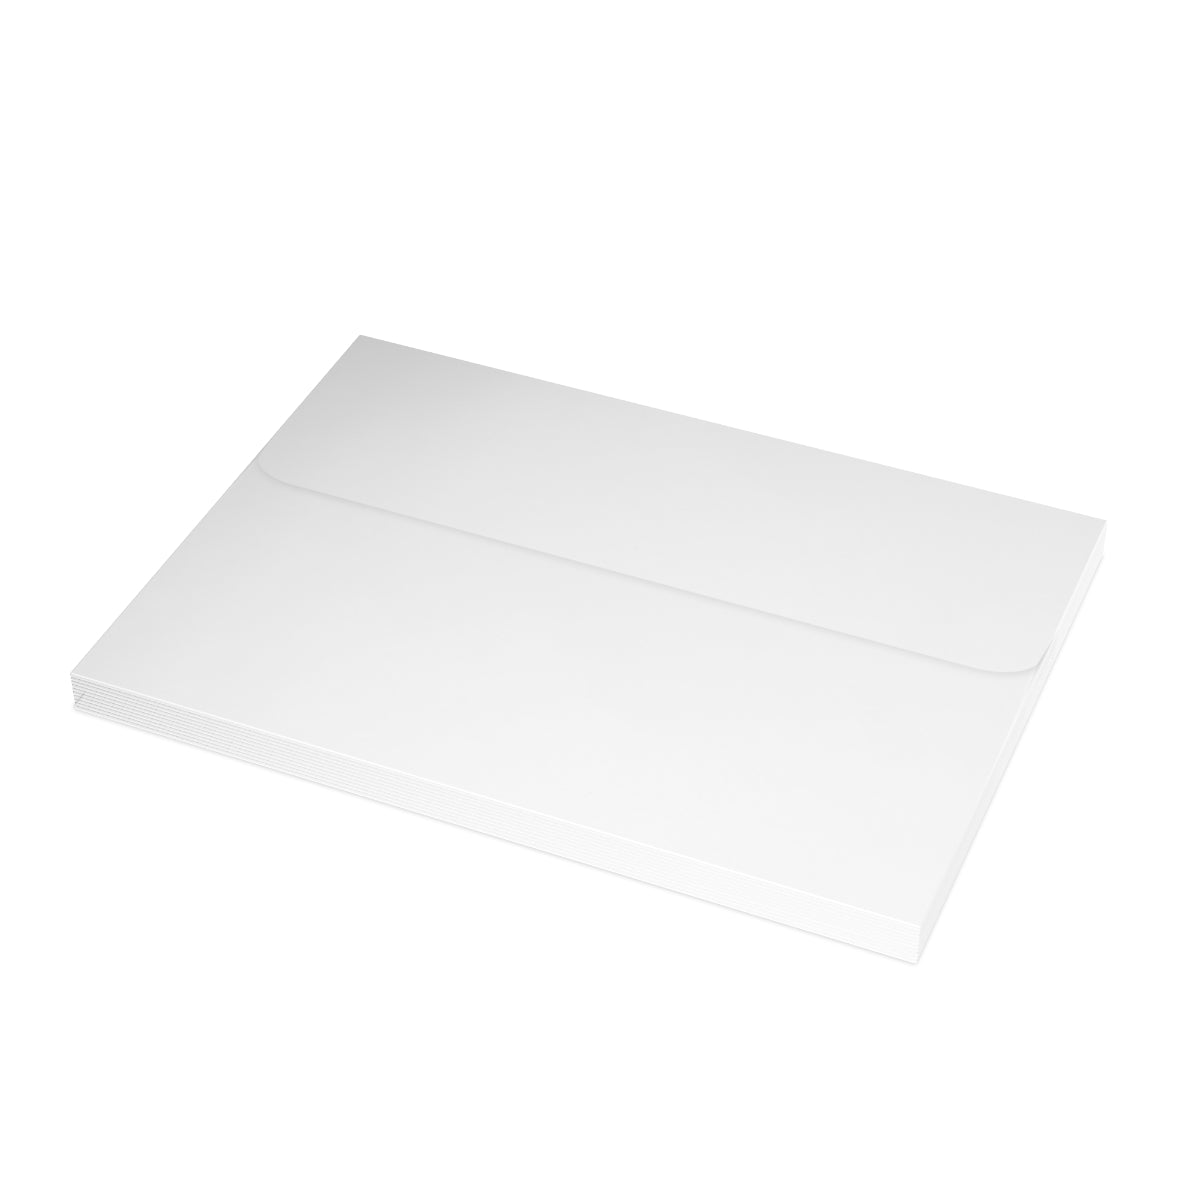 Cartes à notes mates pliées Bassin d'Arcachon + Enveloppes (10pcs) 